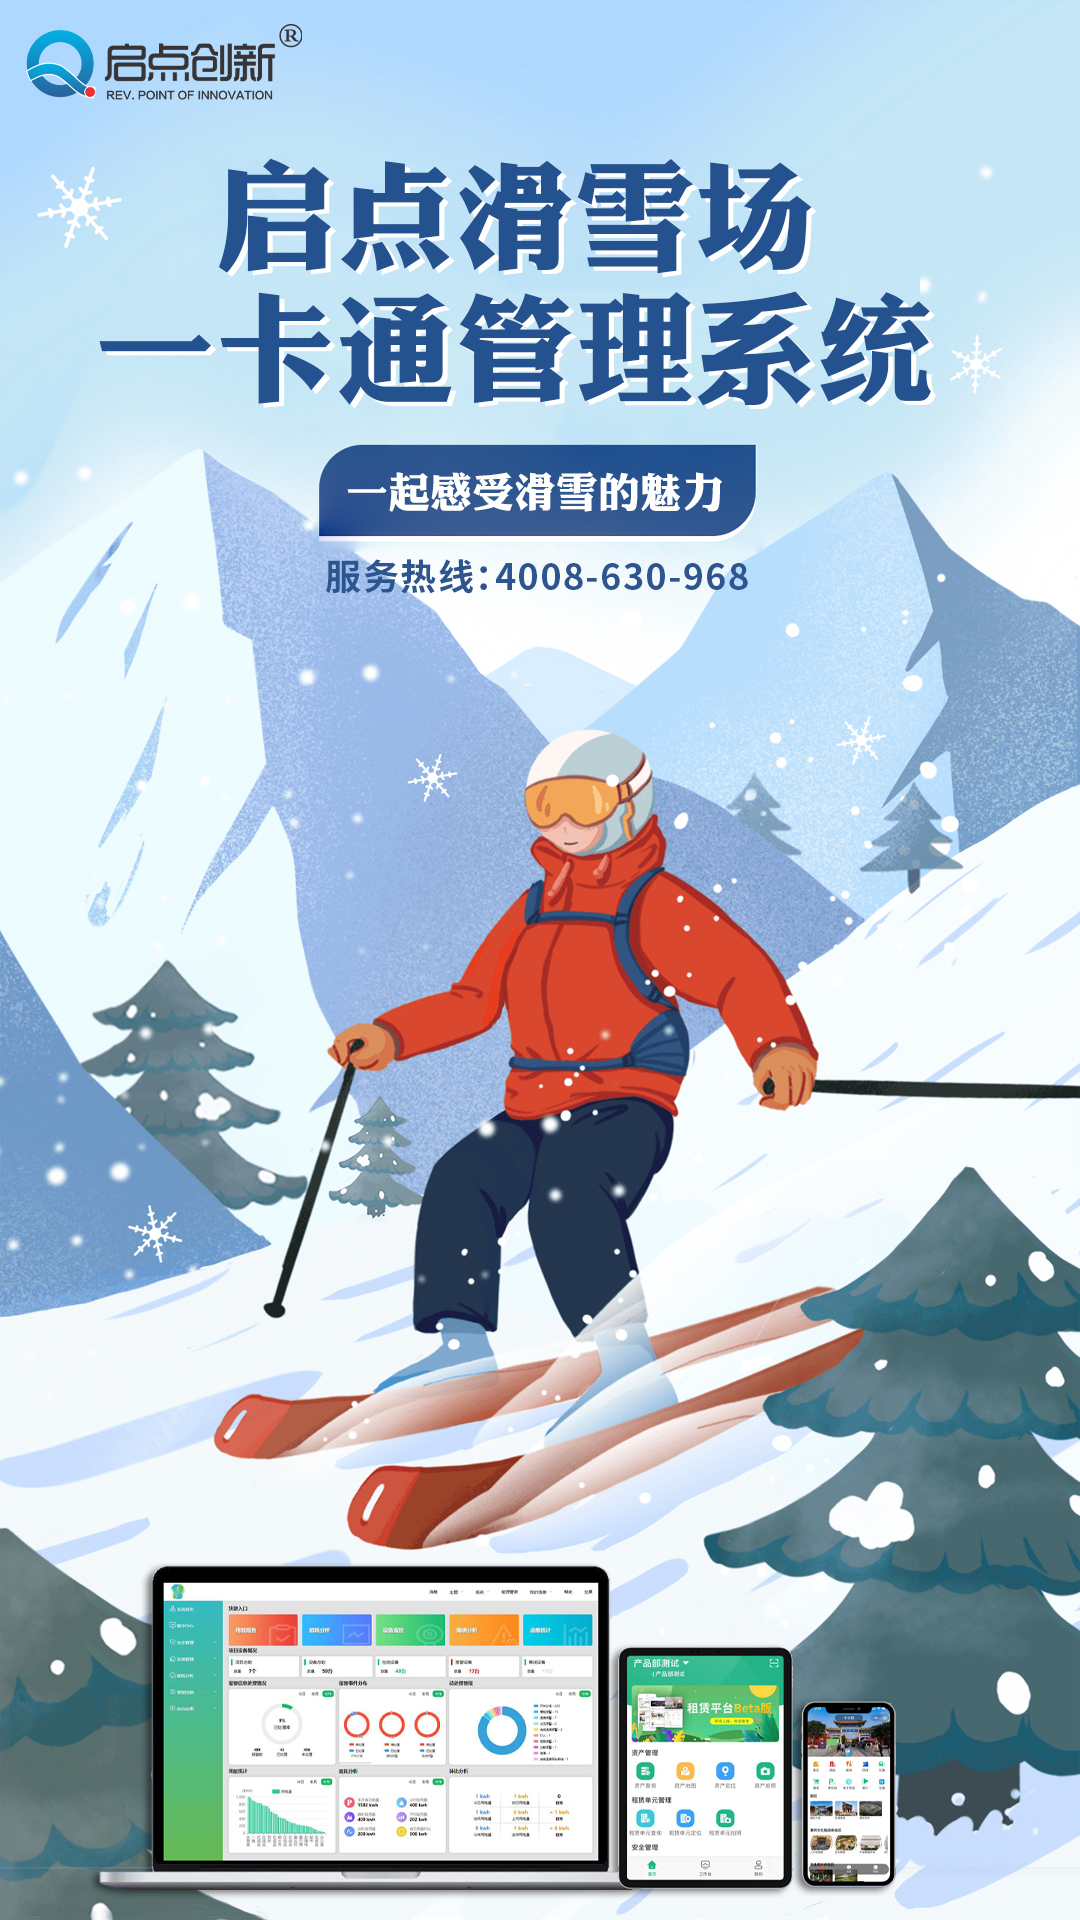 博讯通定制开发滑雪场一卡通系统 景区SaaS电子票务系统